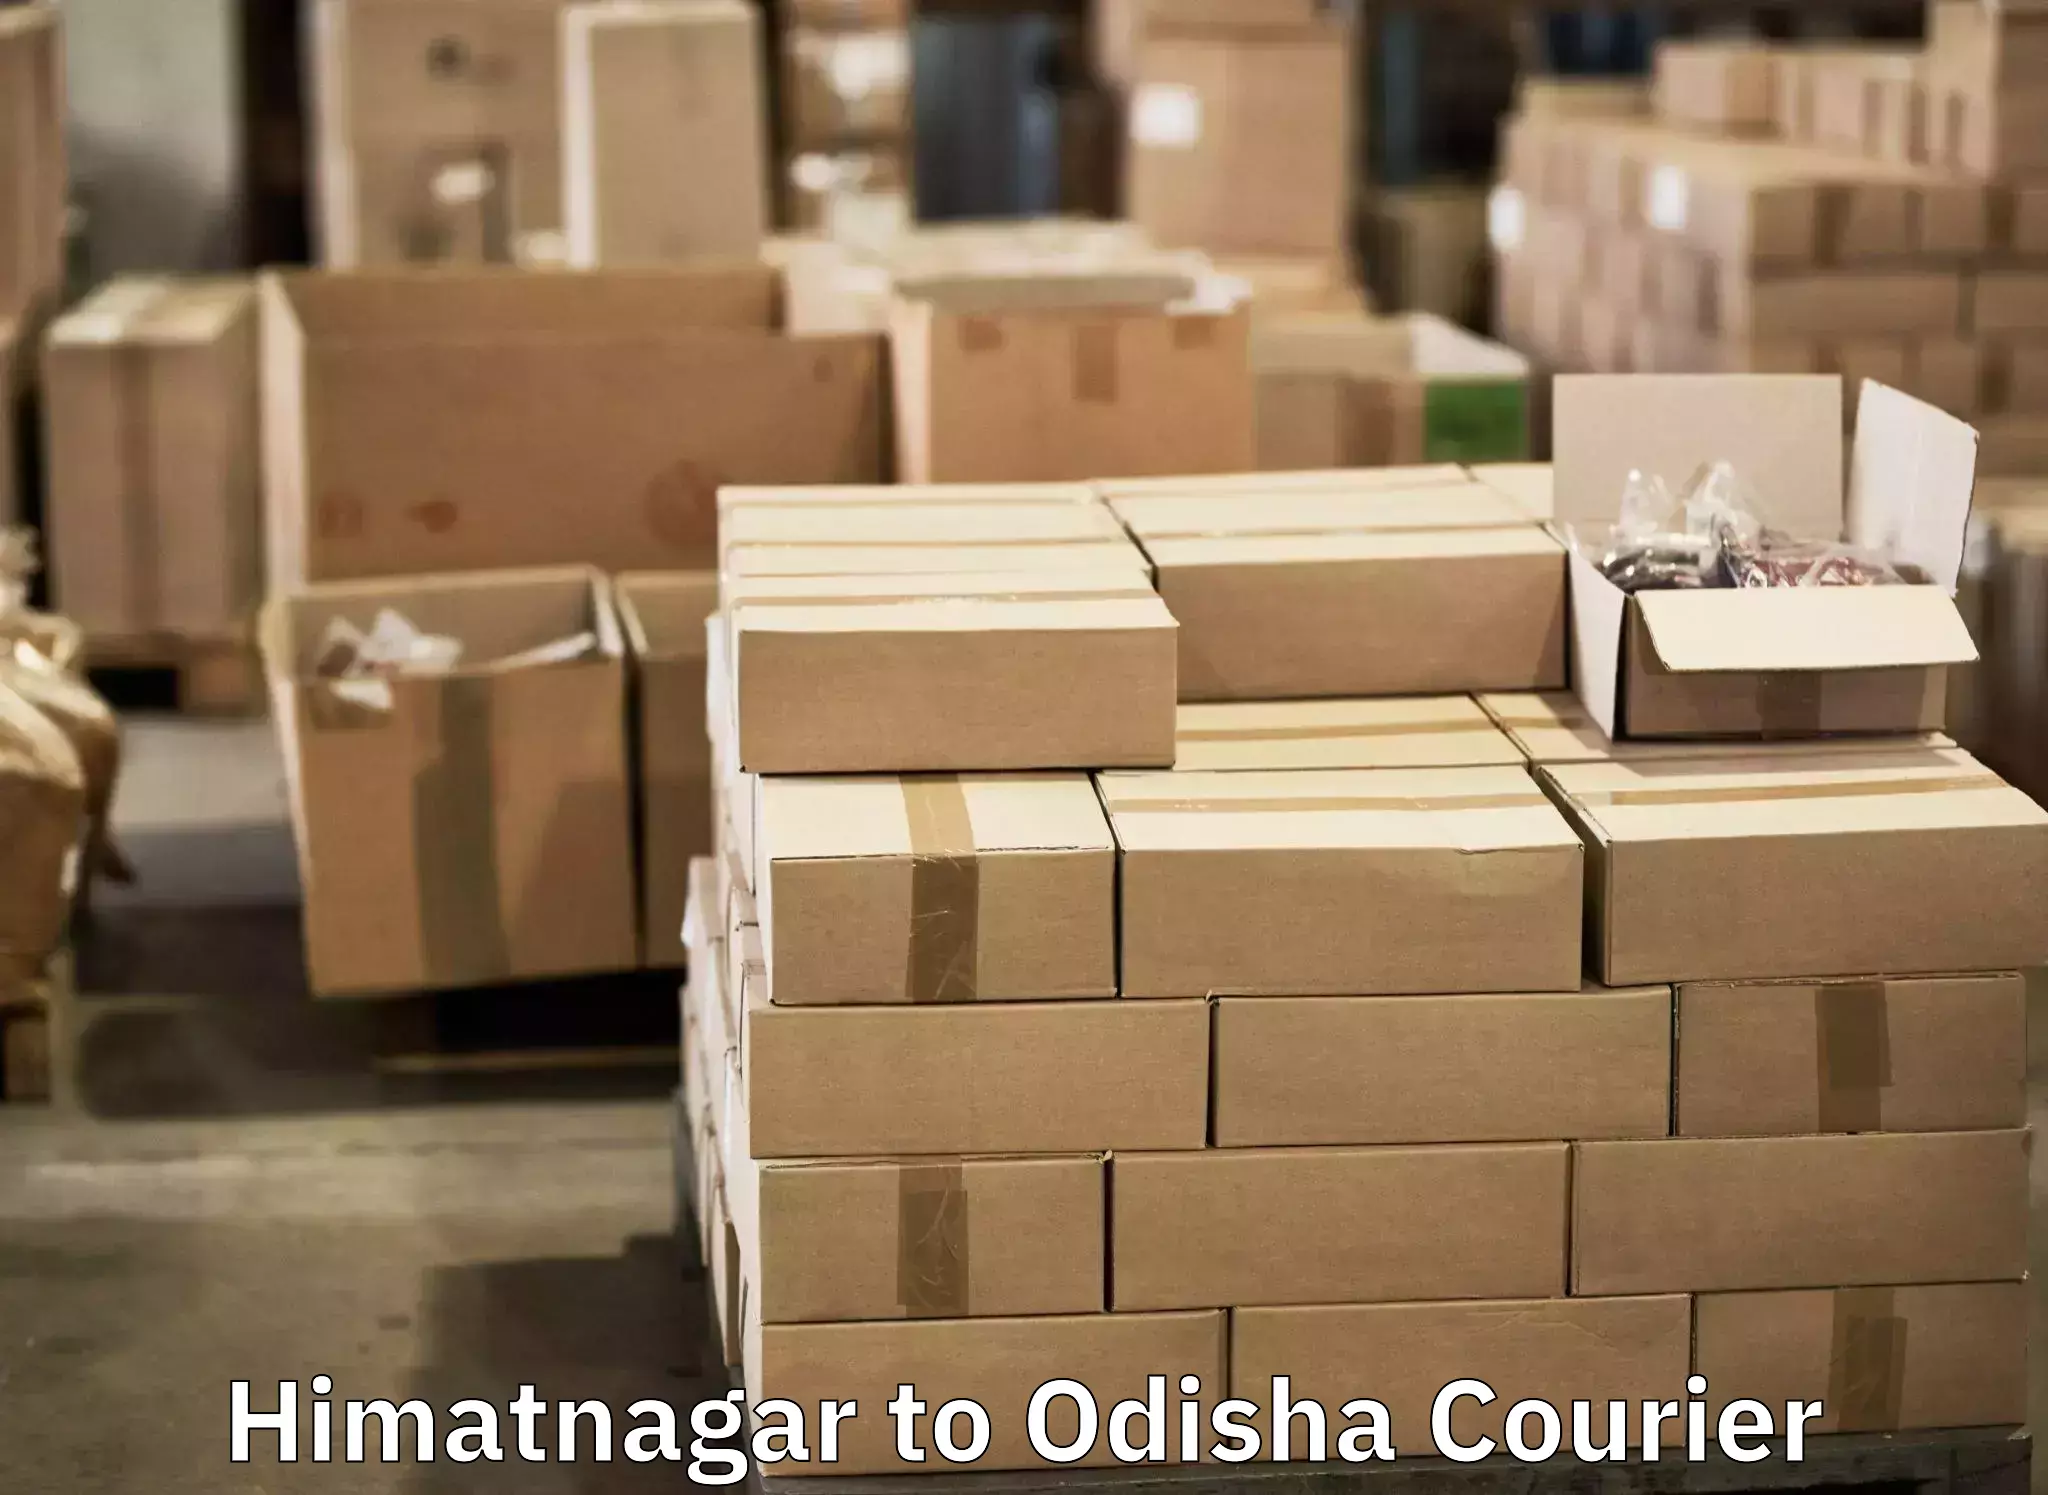 Baggage shipping experts Himatnagar to Jaraka